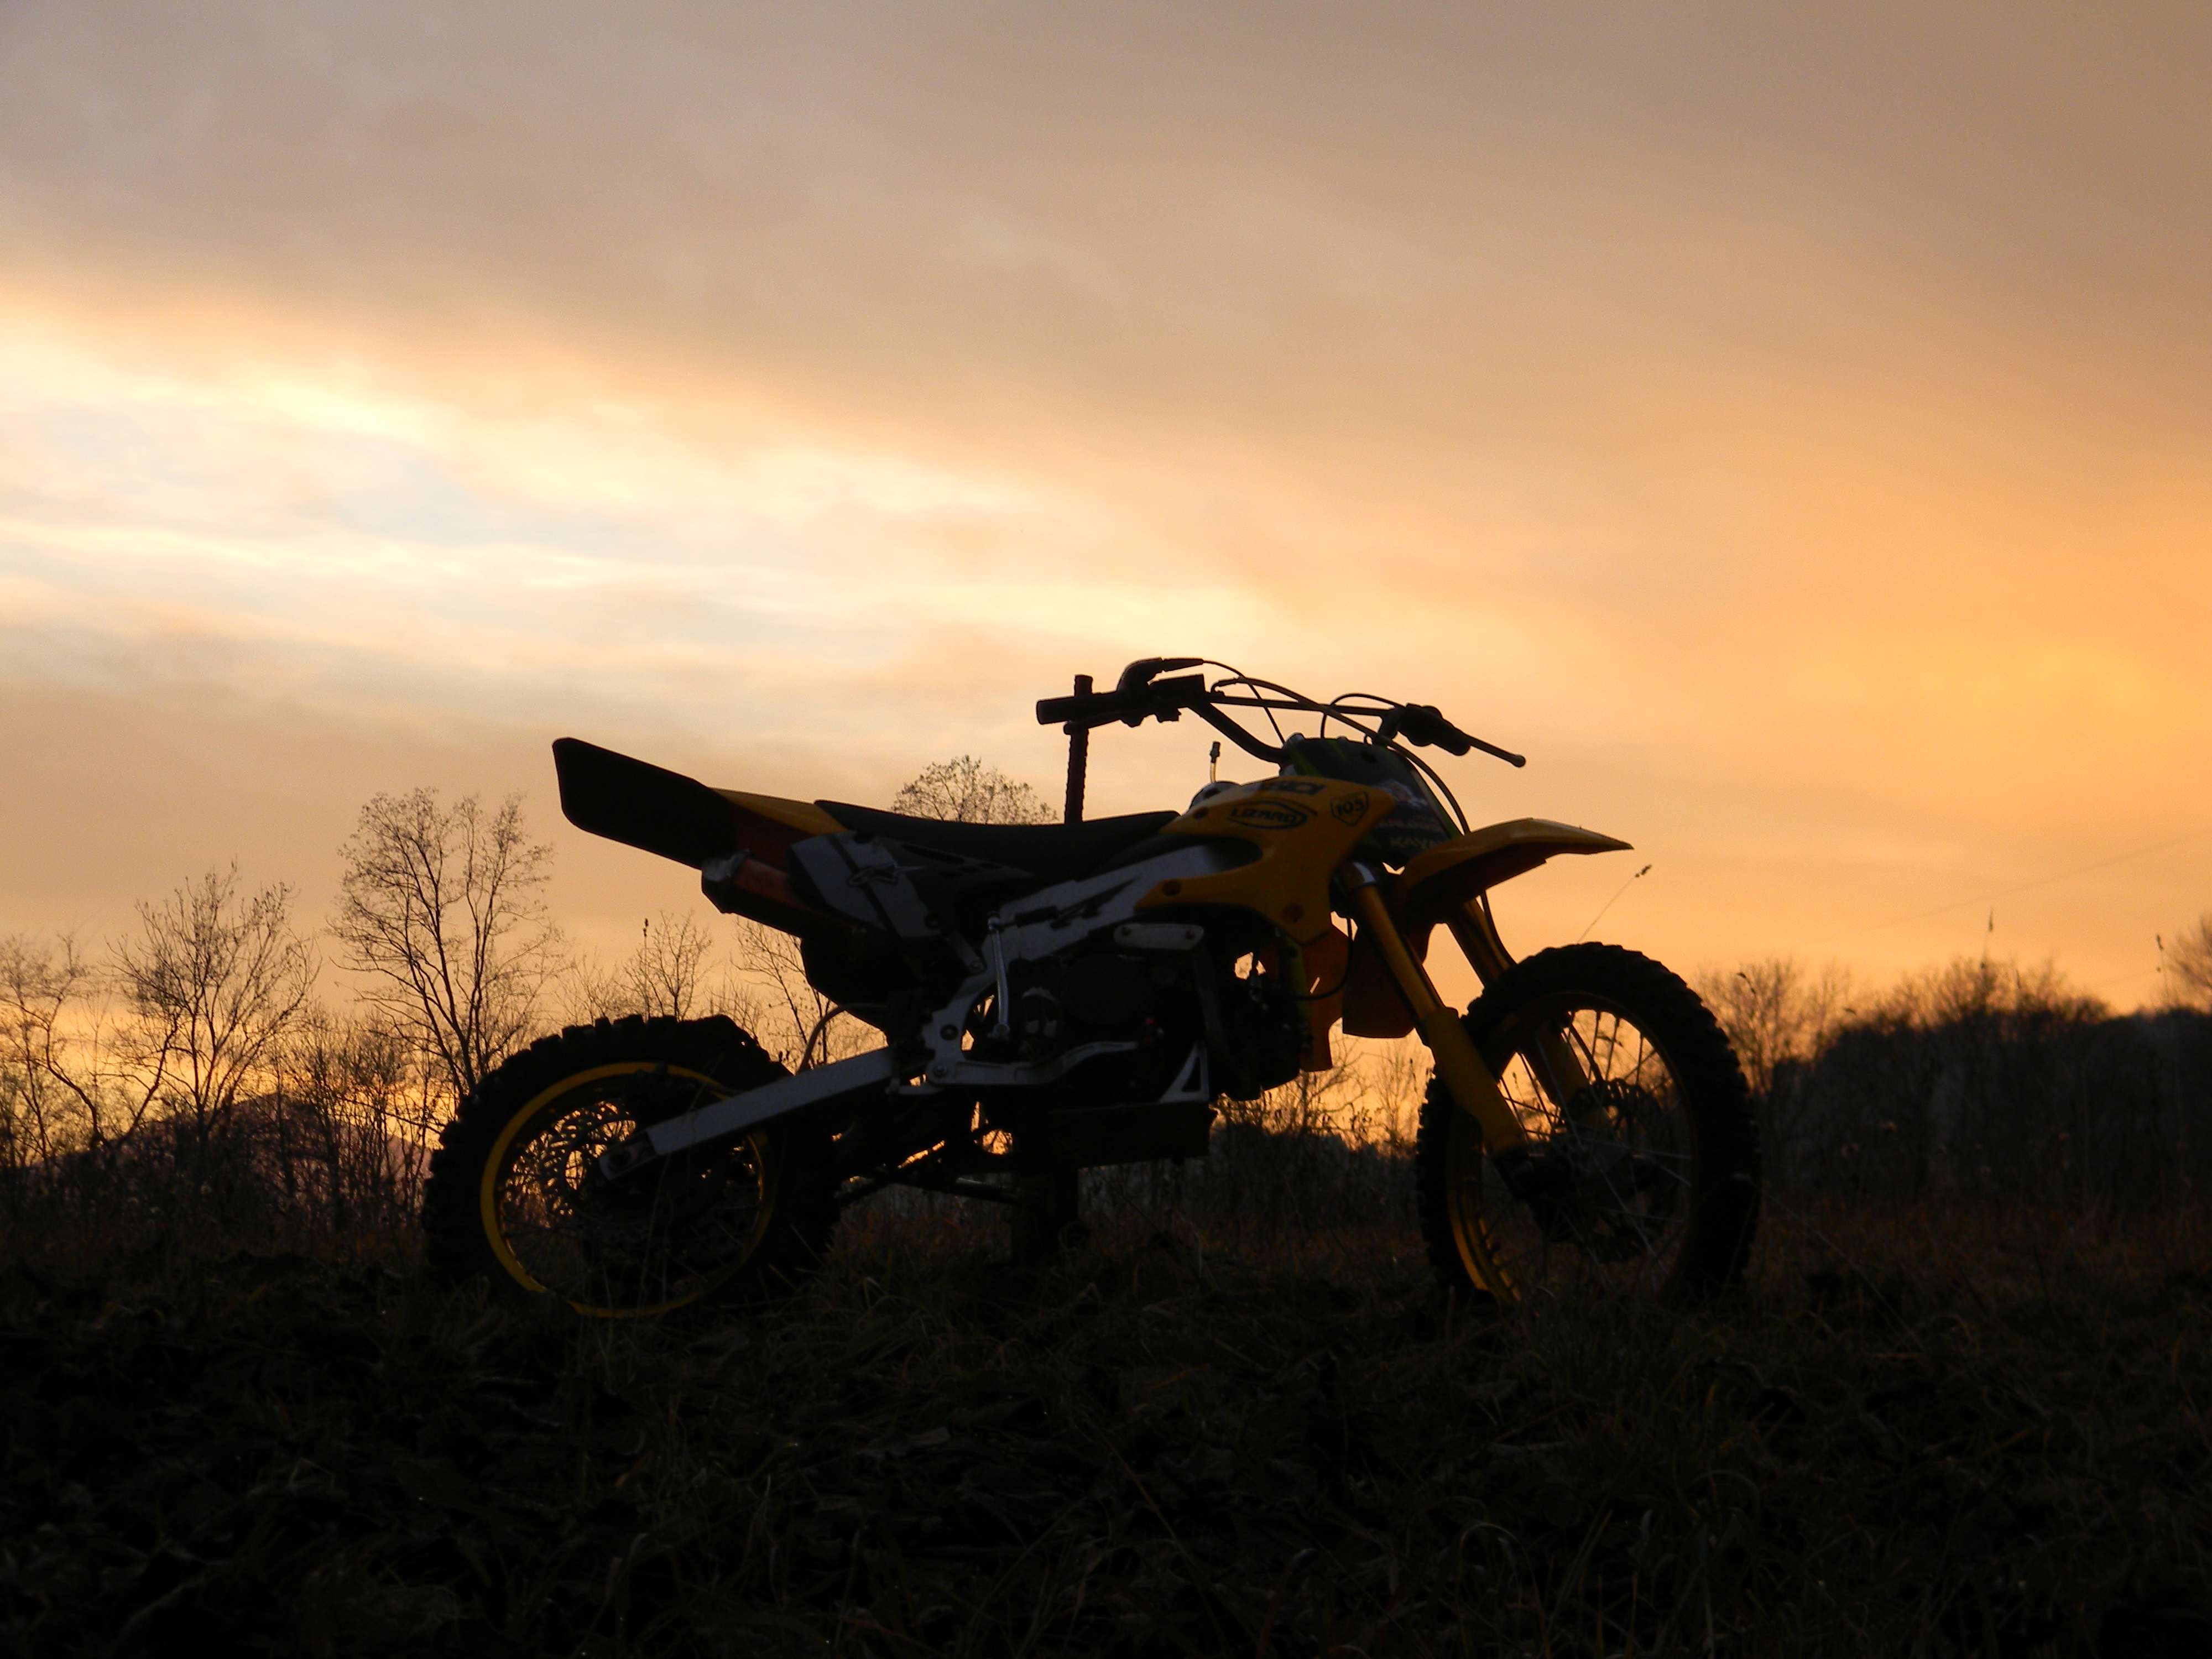 Motocross - Sunset 4k Ultra HD Wallpaper | Background ...